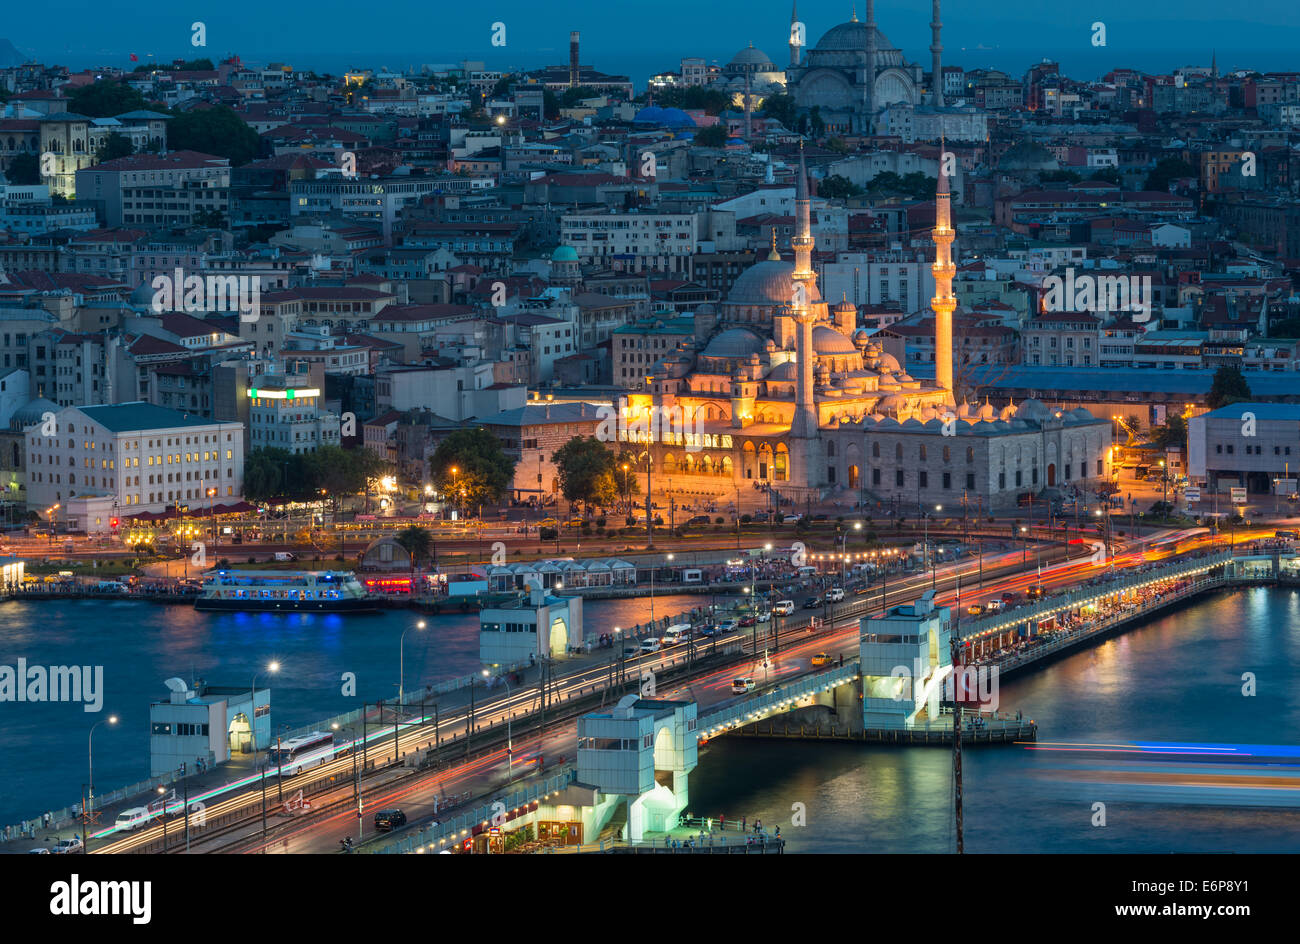 Yeni Cami (neue Moschee) beleuchtet in der Nacht, mit Galata-Brücke im Vordergrund. Stockfoto